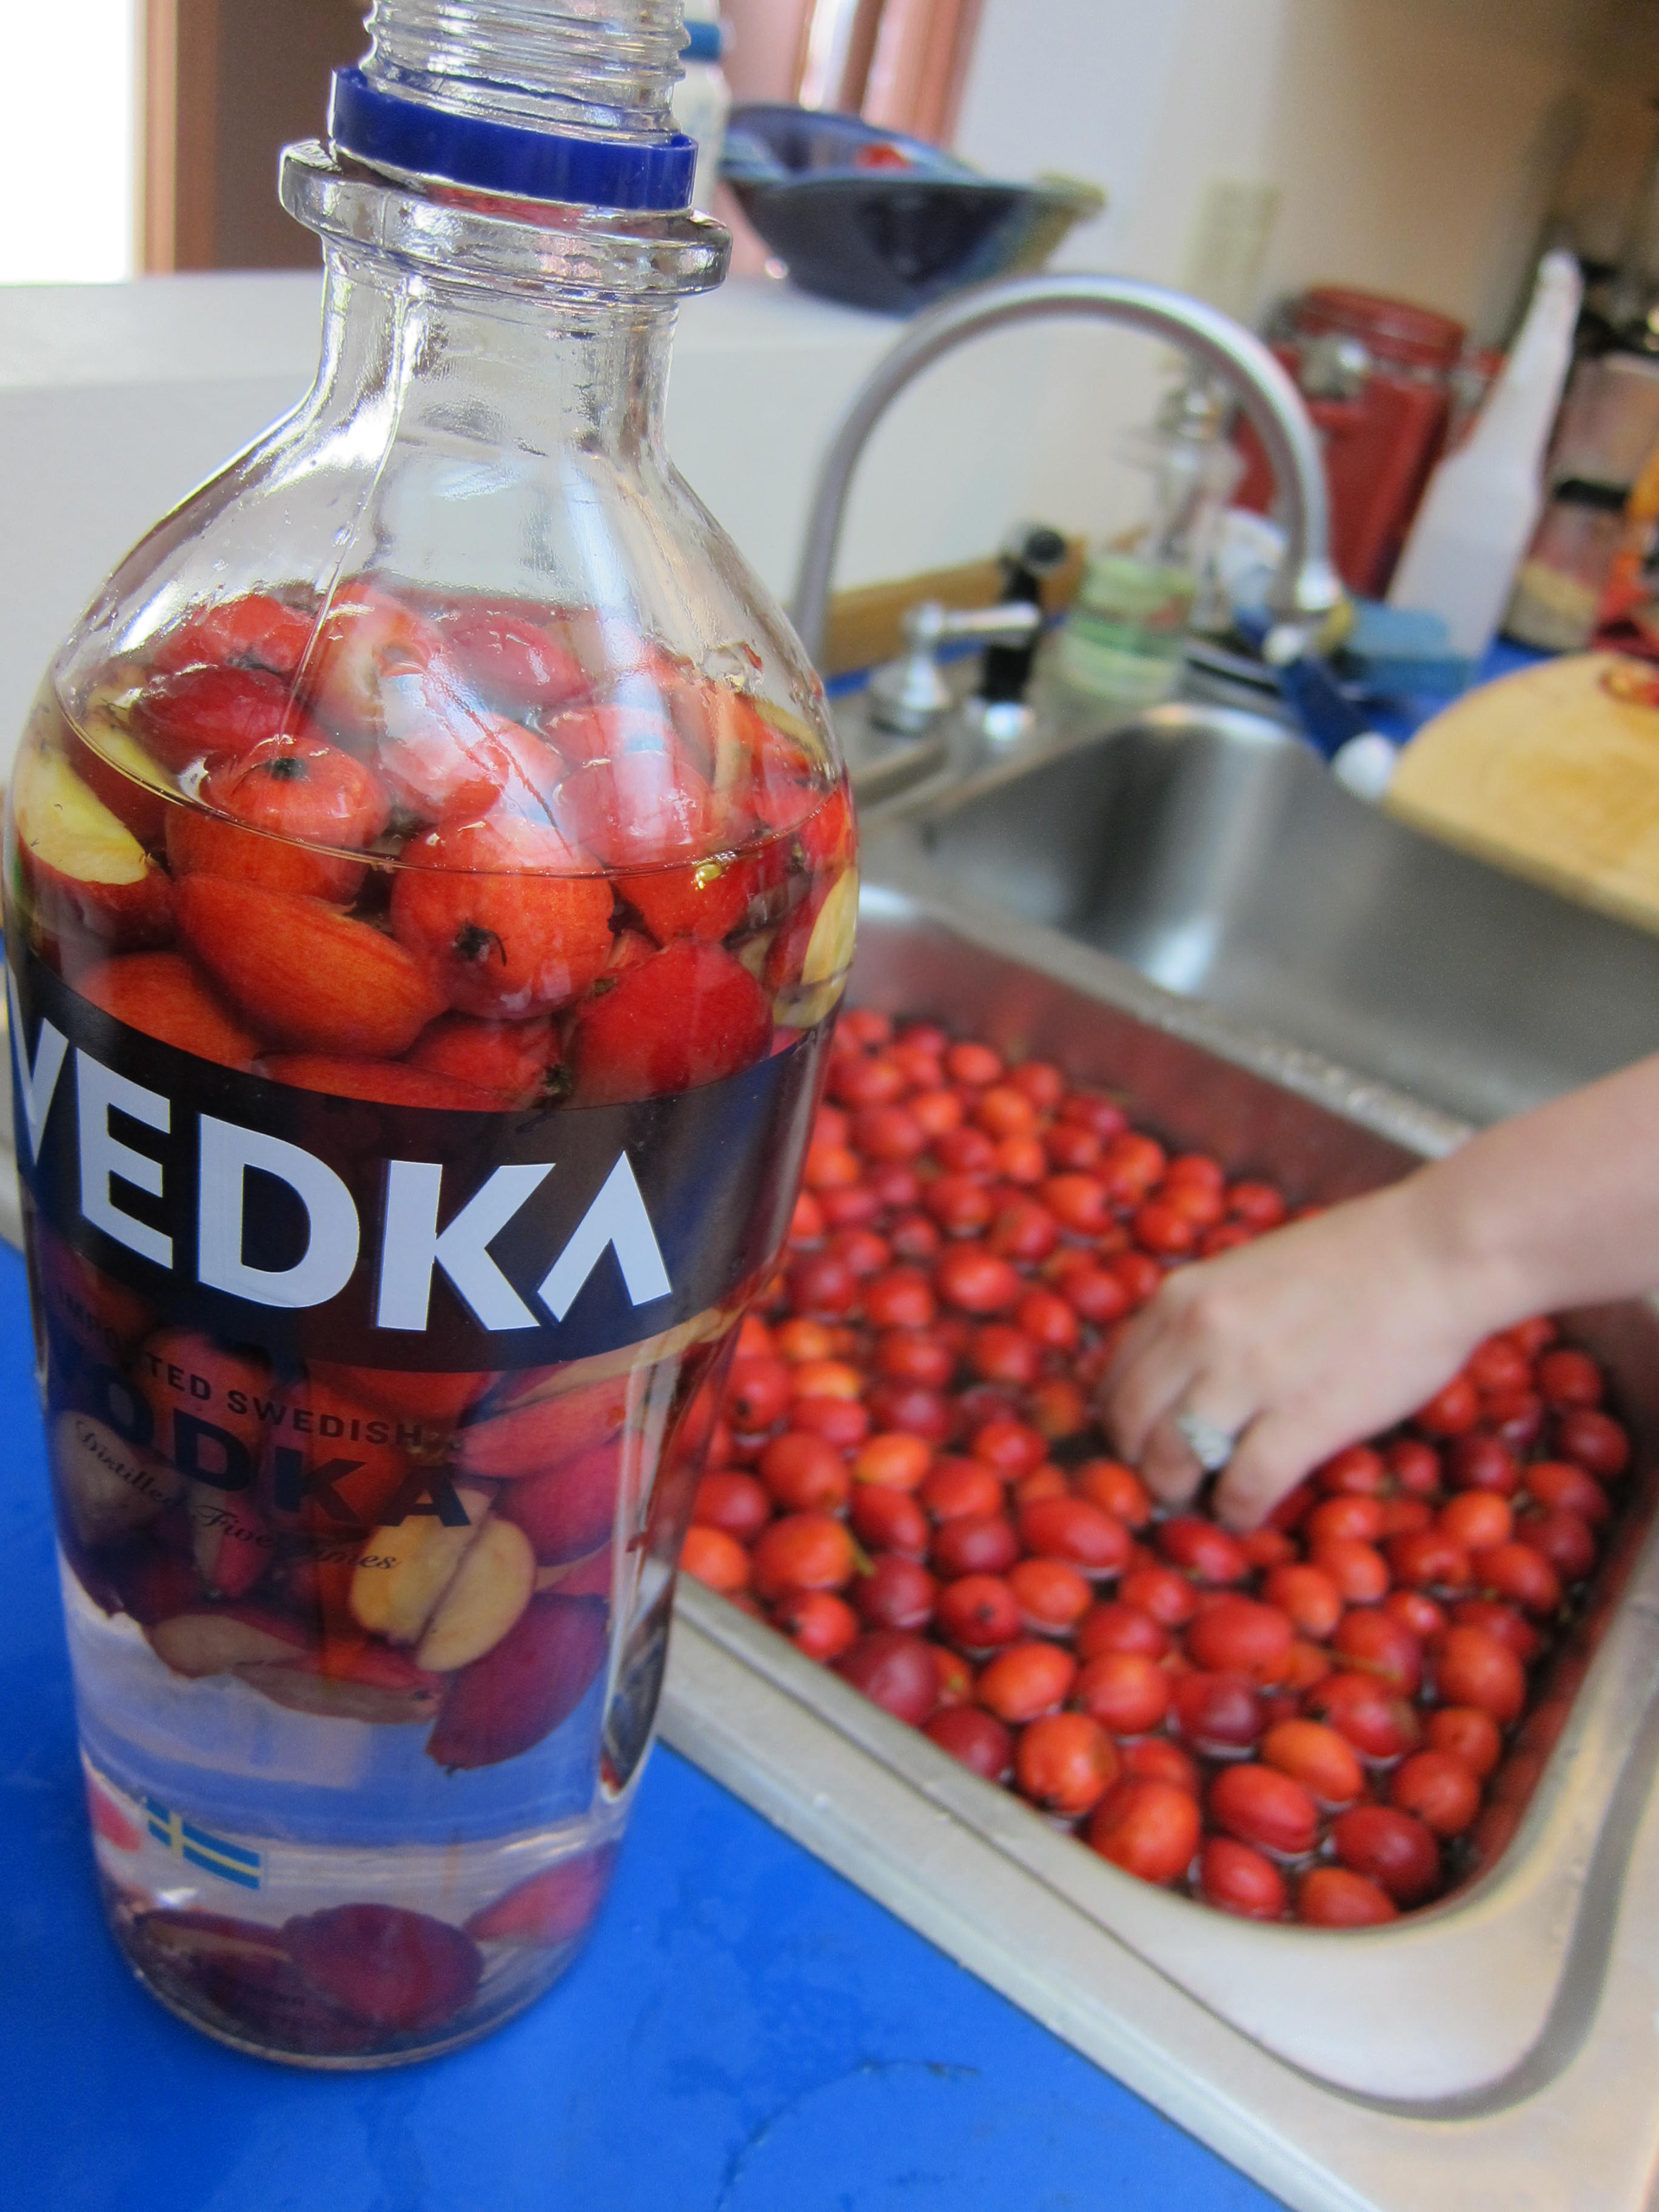 Svedka vodka bottle full of crabapples